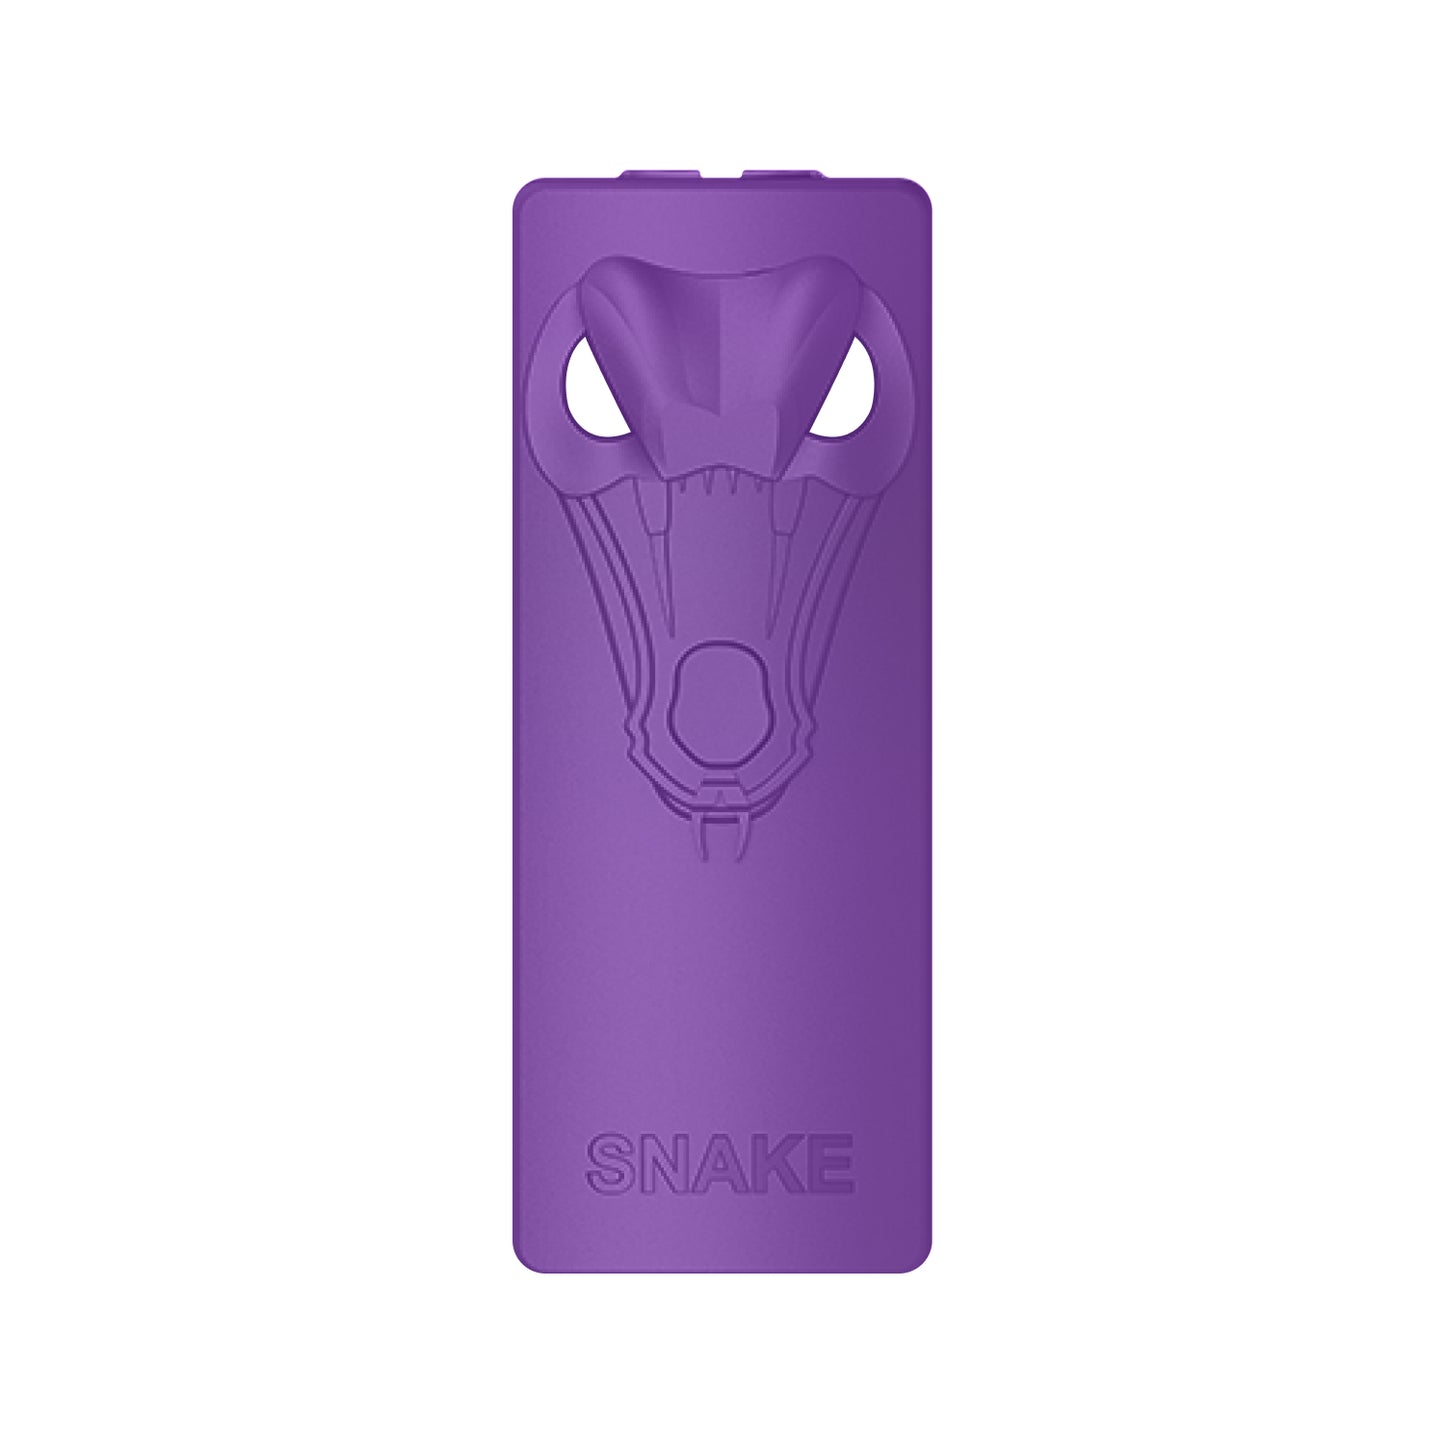 Yocan Kodo Animal Box Mod - snake - purple